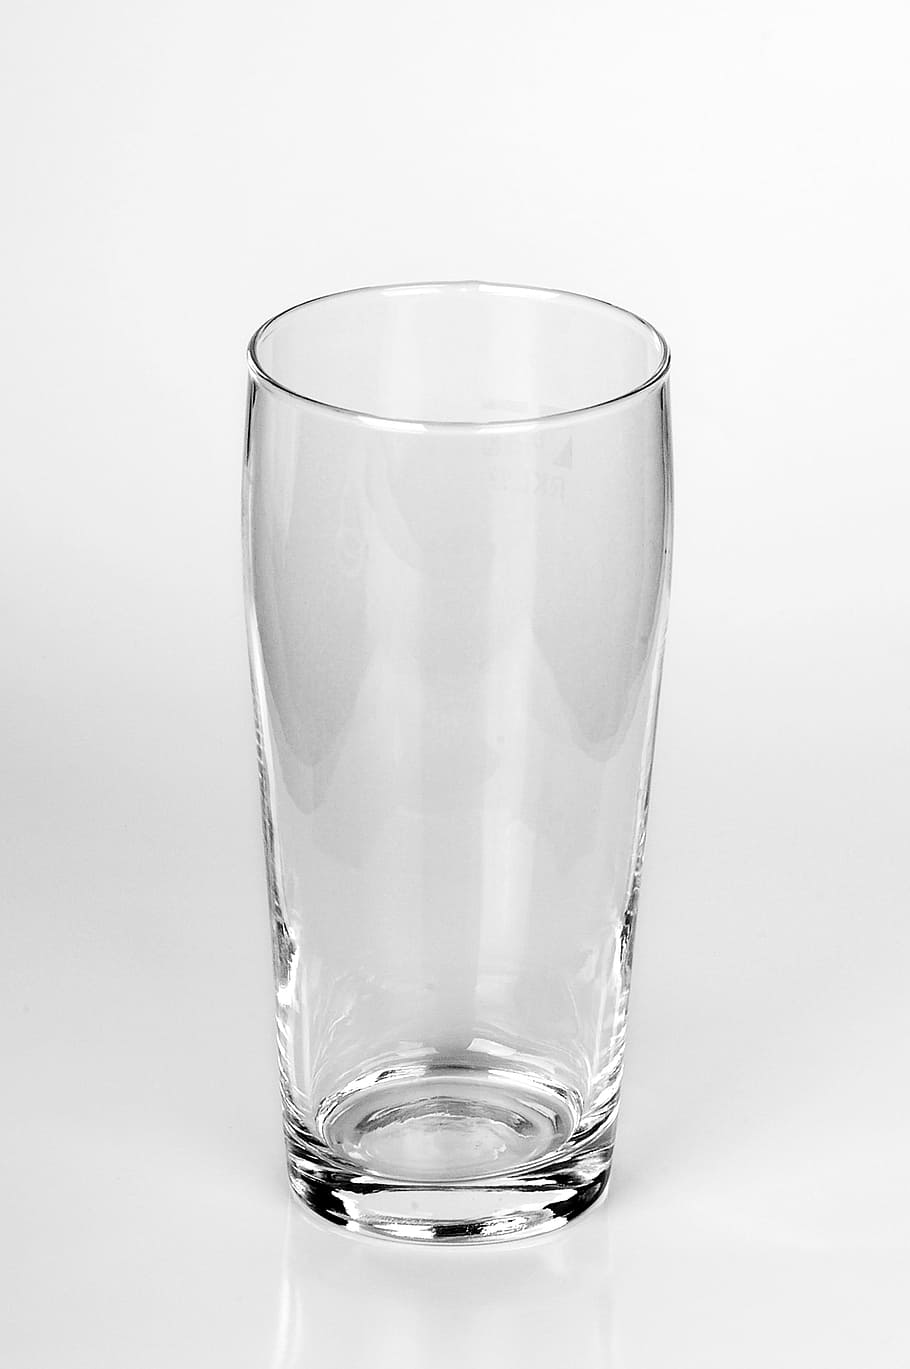 ドリンク, 液体, 飲用, 清潔, 空白, ガラス, ビールグラス, 飲用ビール, 空のグラス, クリスタル